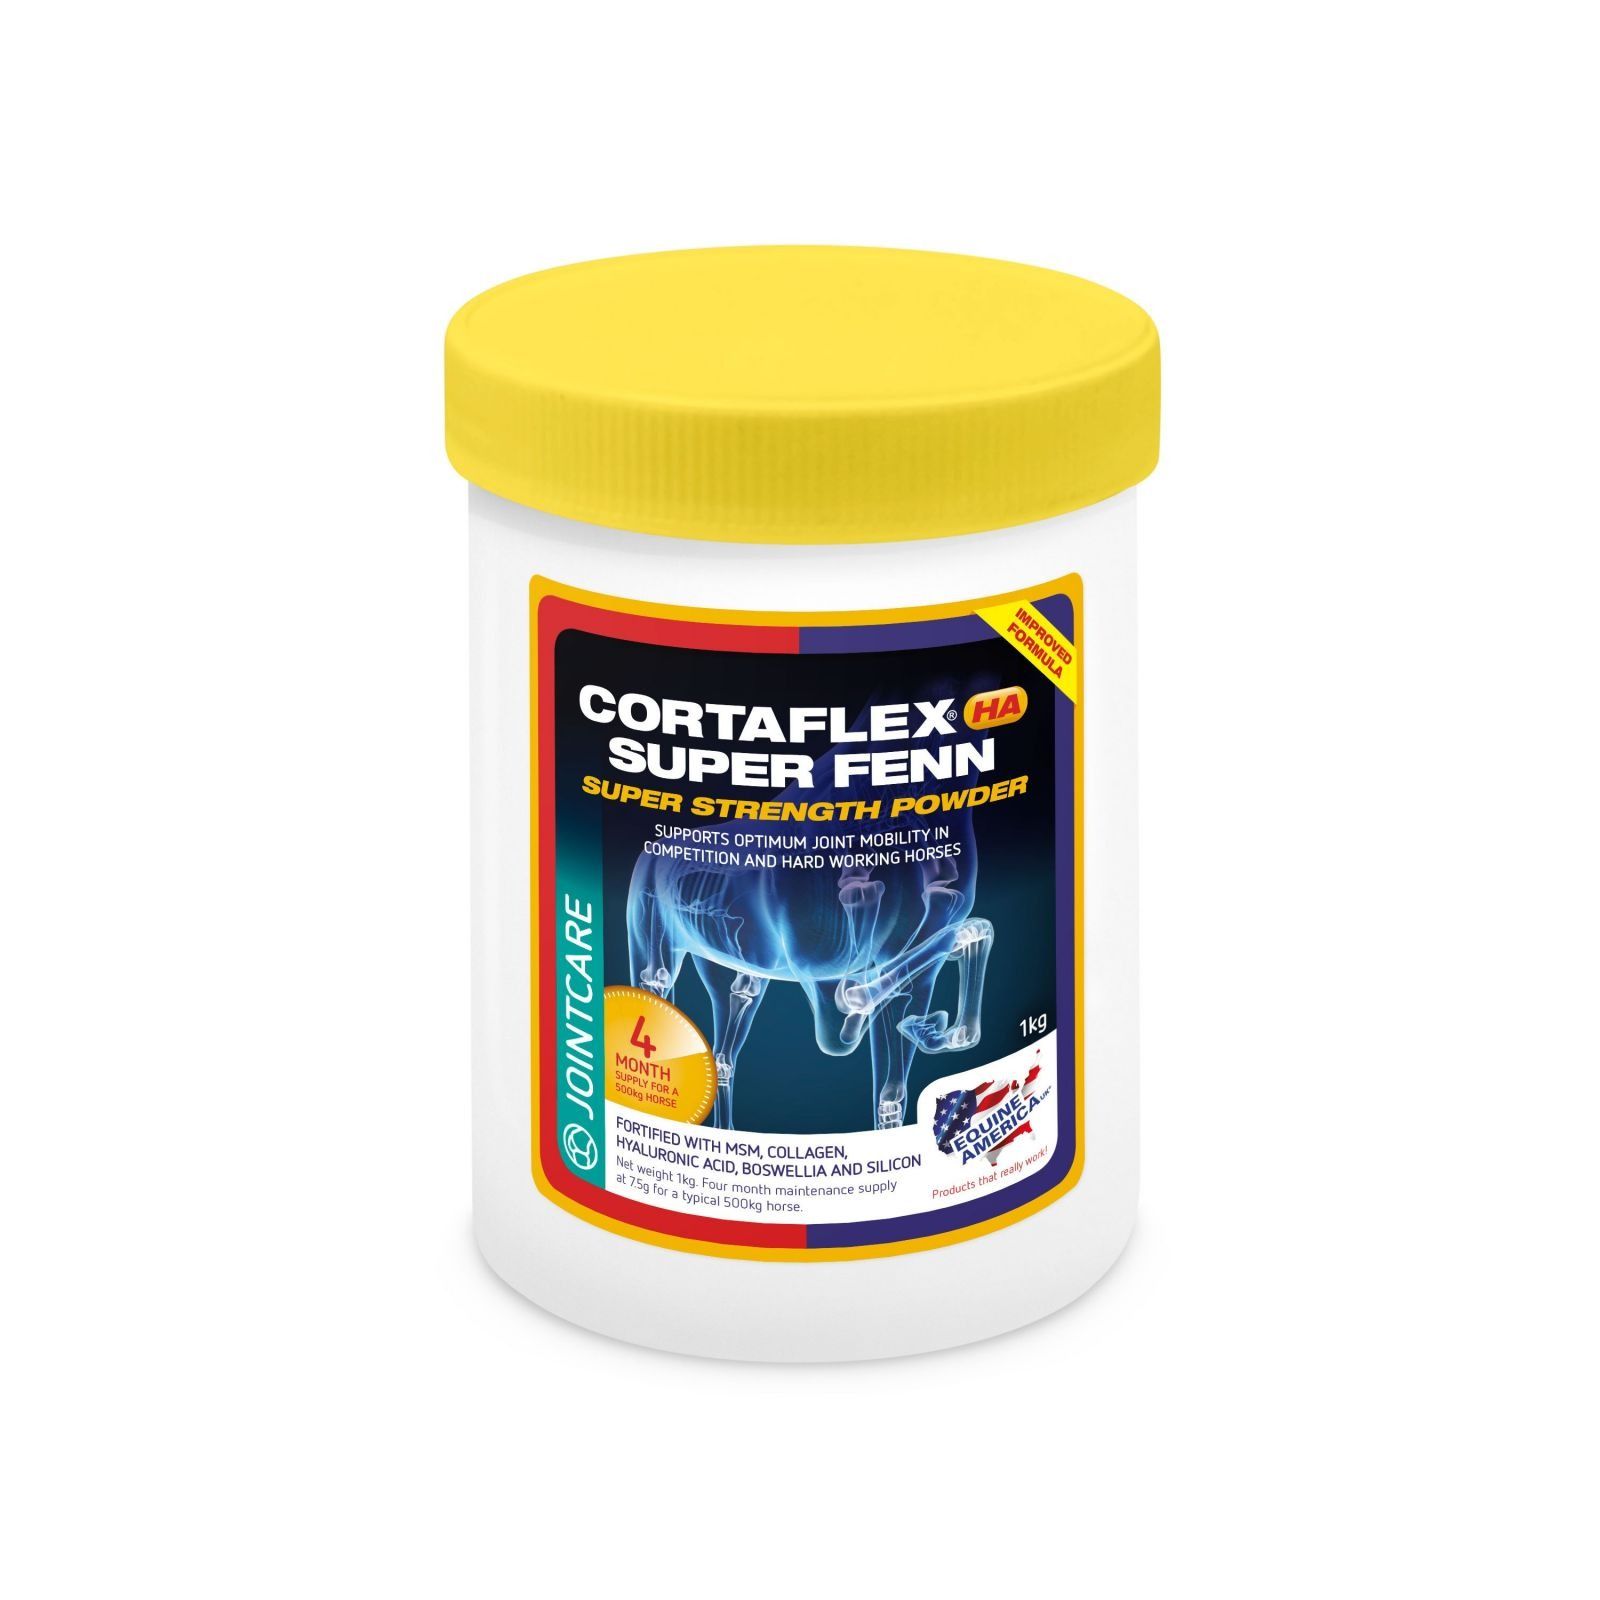 Cortaflex High Strength with Super Fenn Powder